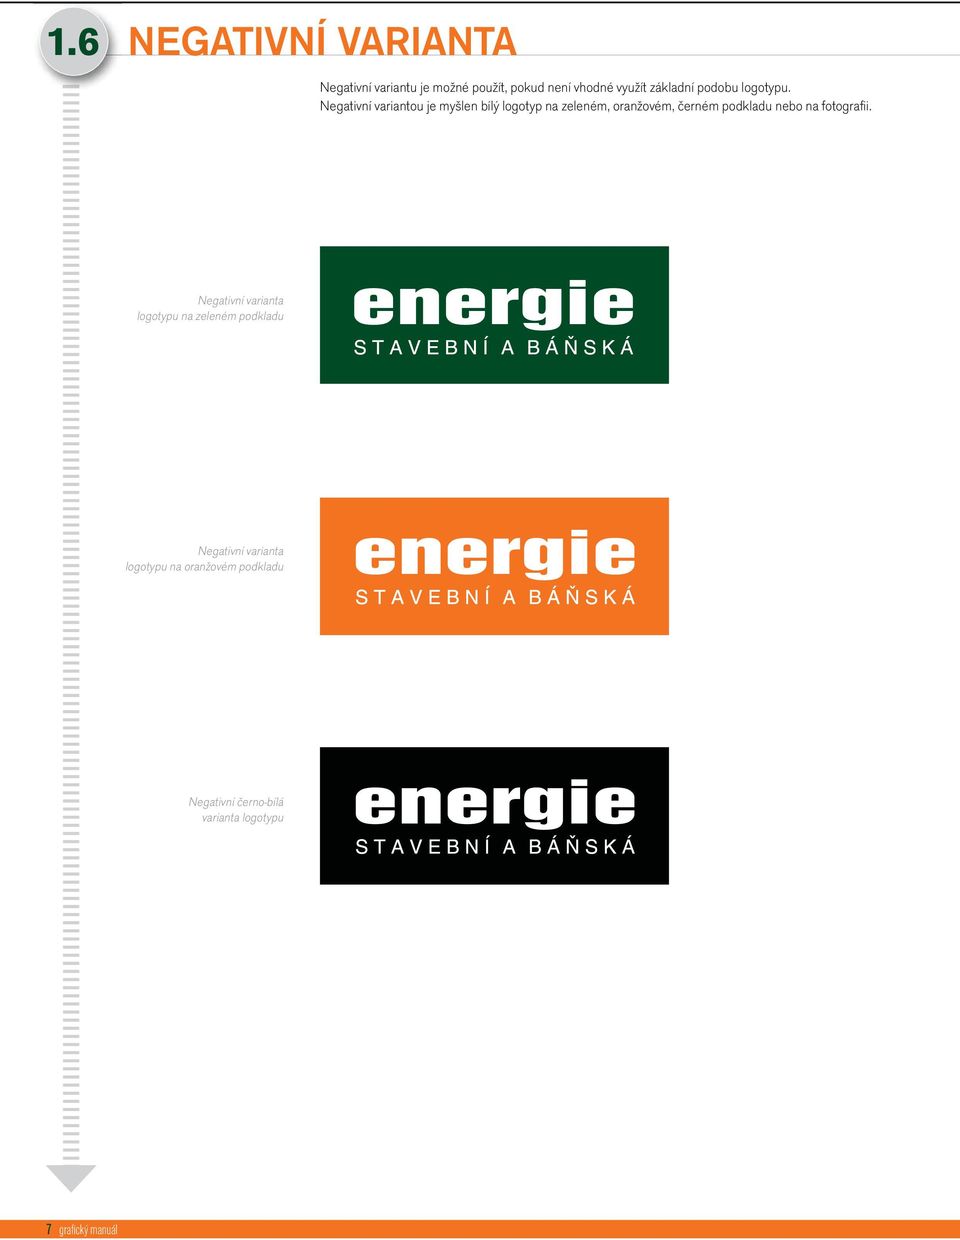 Negativní variantou je myšlen bílý logotyp na zeleném, oranžovém, černém podkladu nebo na